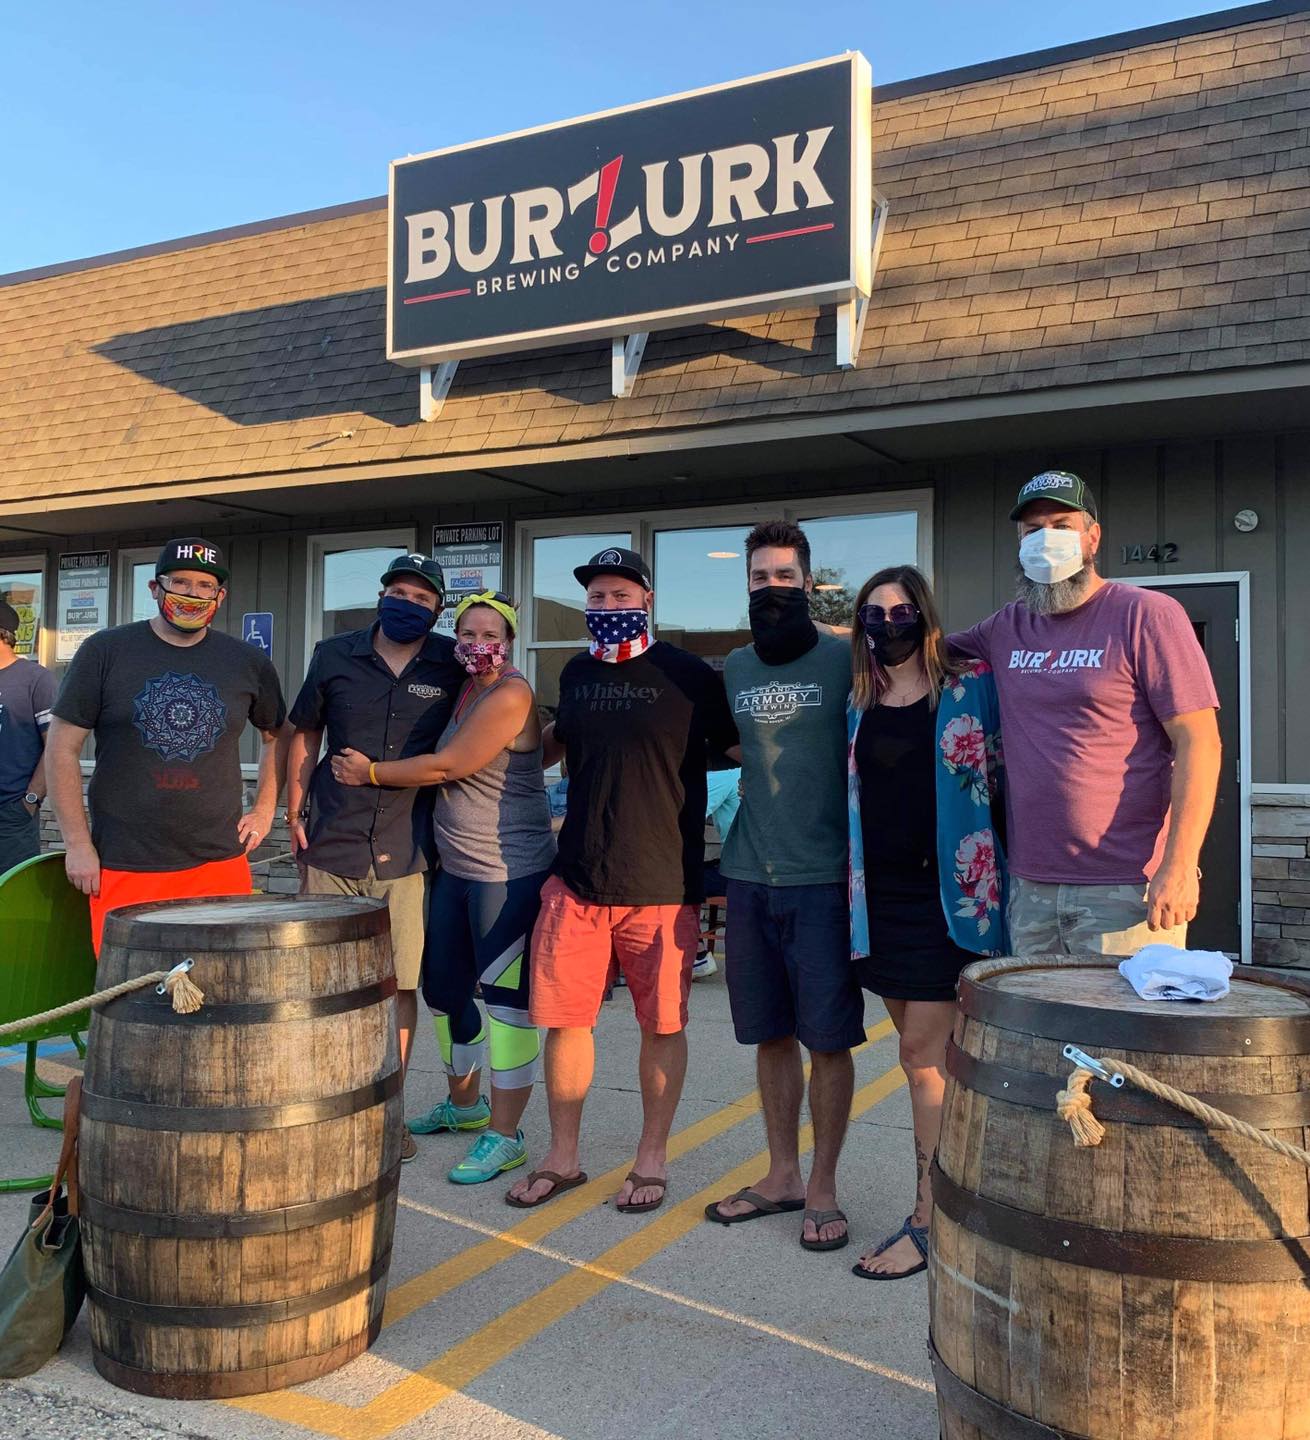 Burzurk Brewing Company, LLC